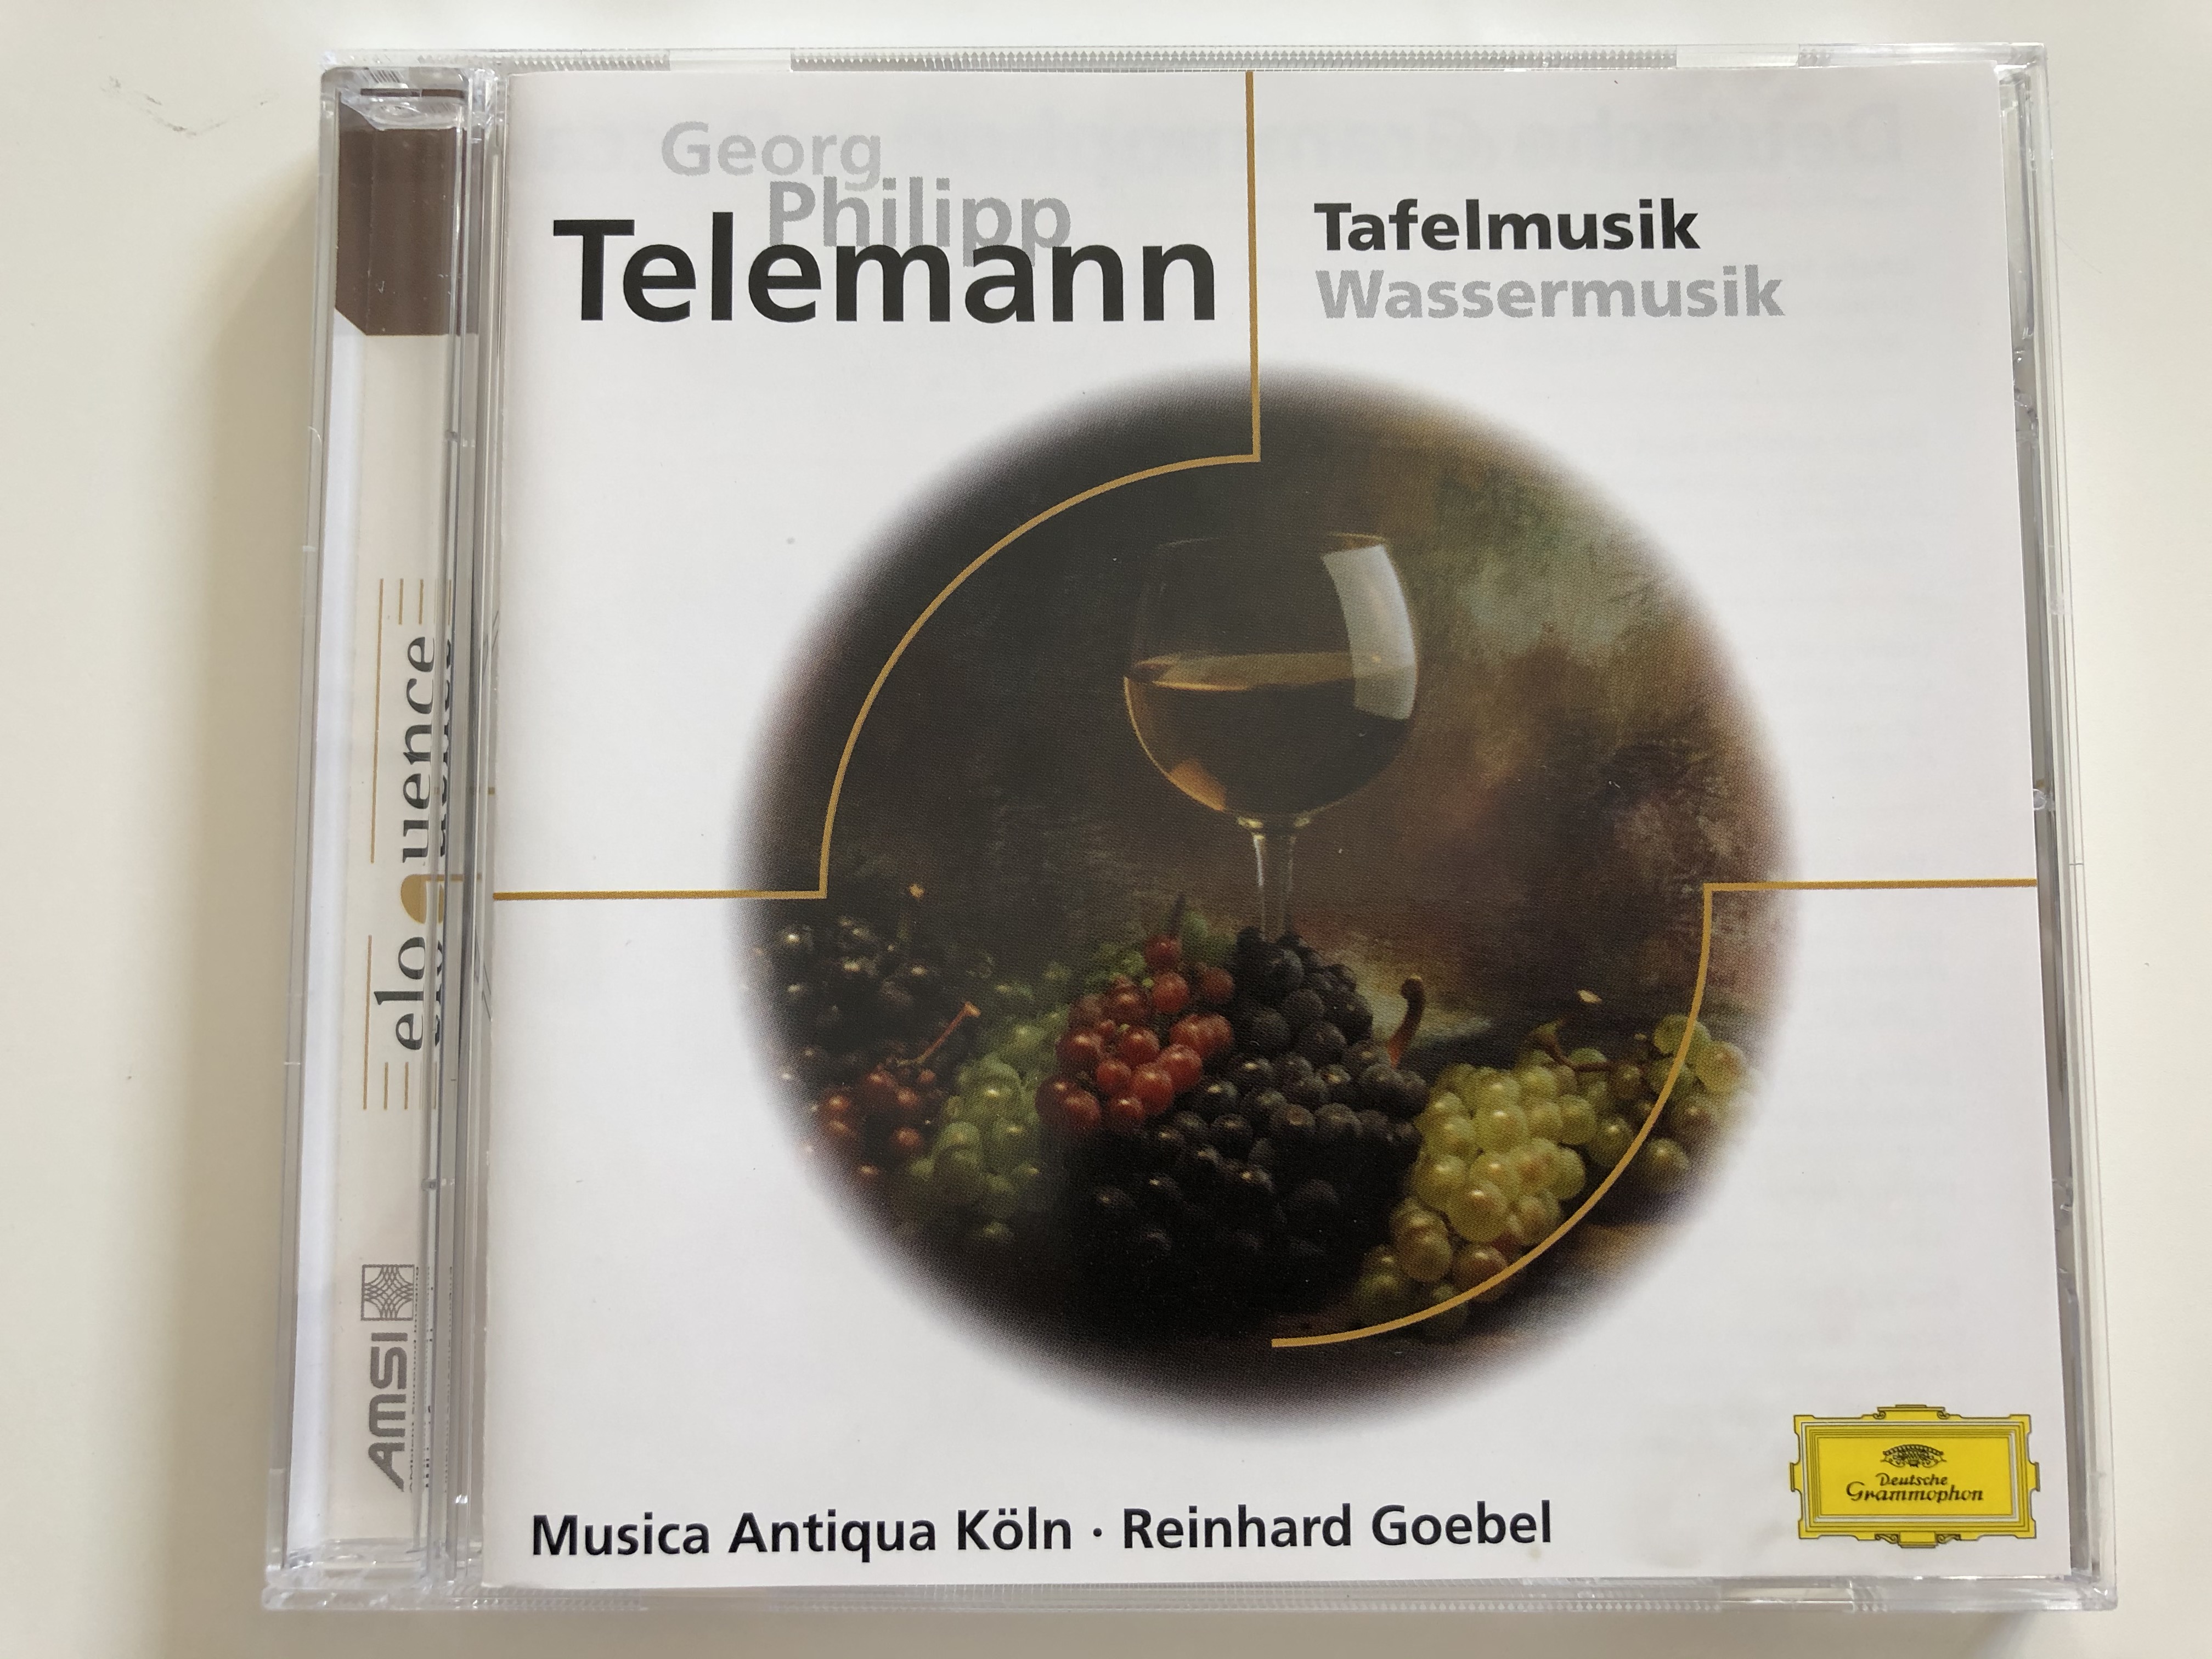 georg-philipp-telemann-tafelmusik-wassermusik-musica-antiqua-k-ln-reinhard-goebel-deutsche-grammophon-audio-cd-463-268-2-1-.jpg